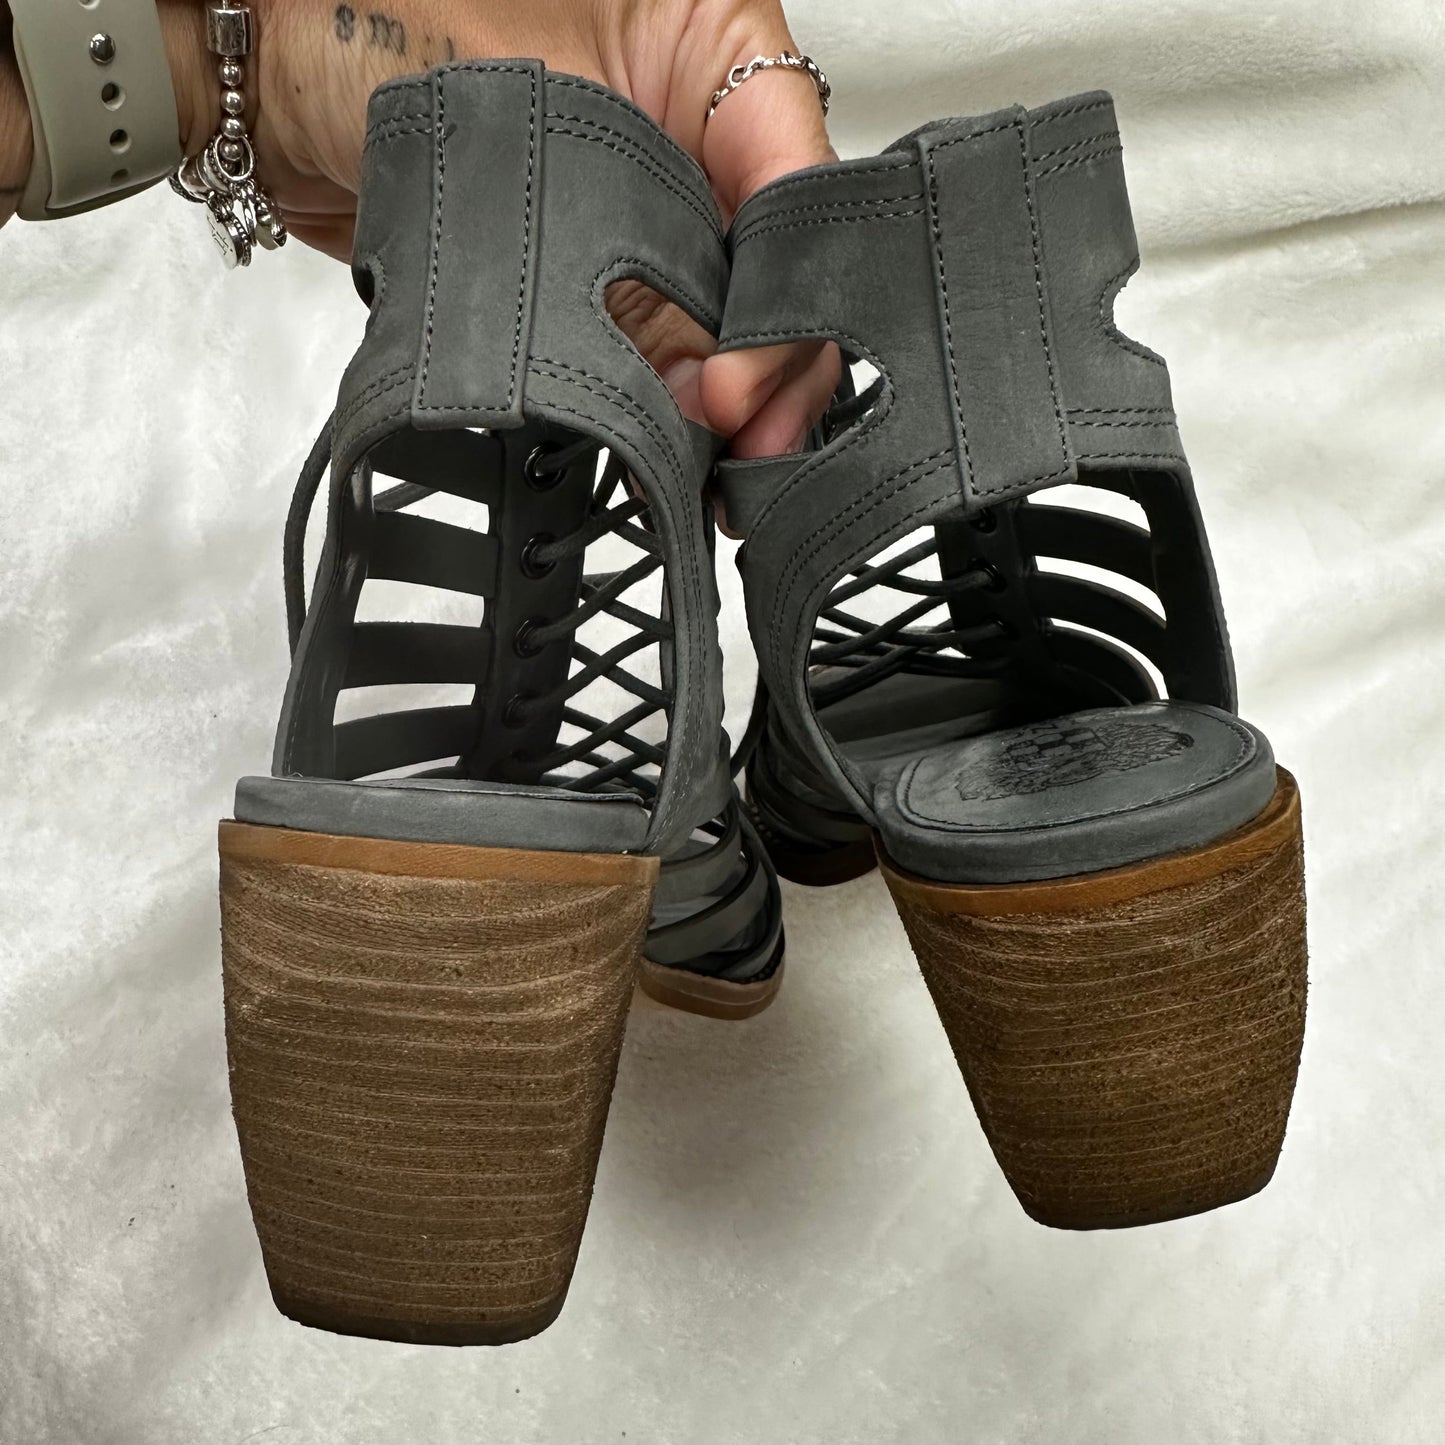 Steel Sandals Heels Block Vince Camuto, Size 8.5